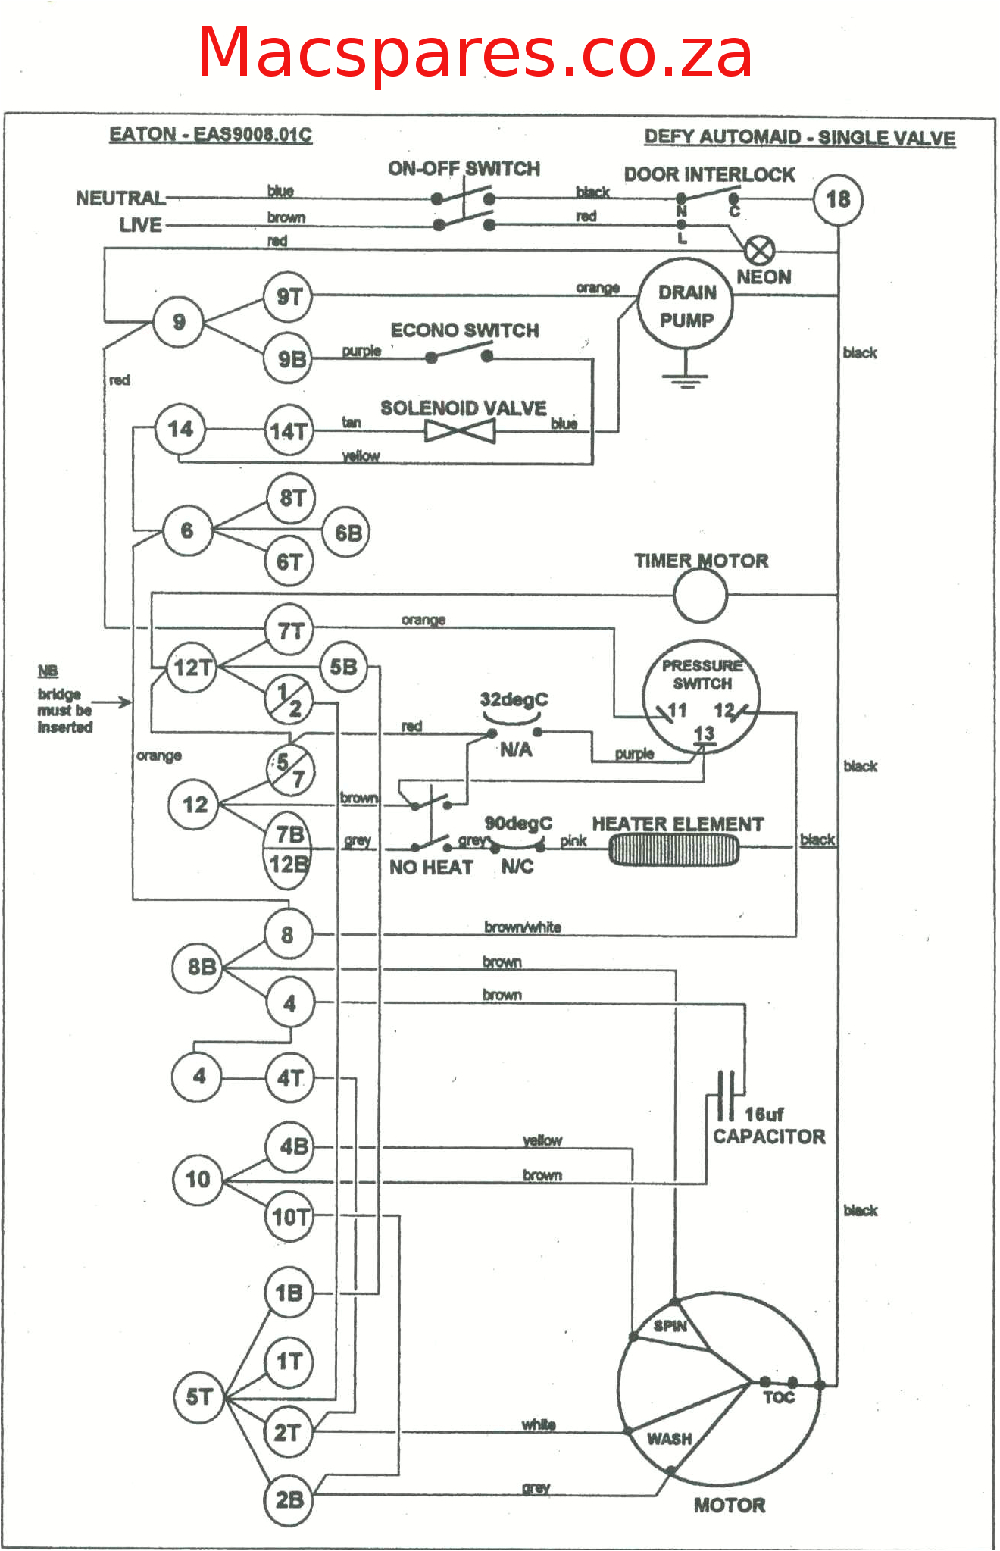 wiring diagrams washing machines